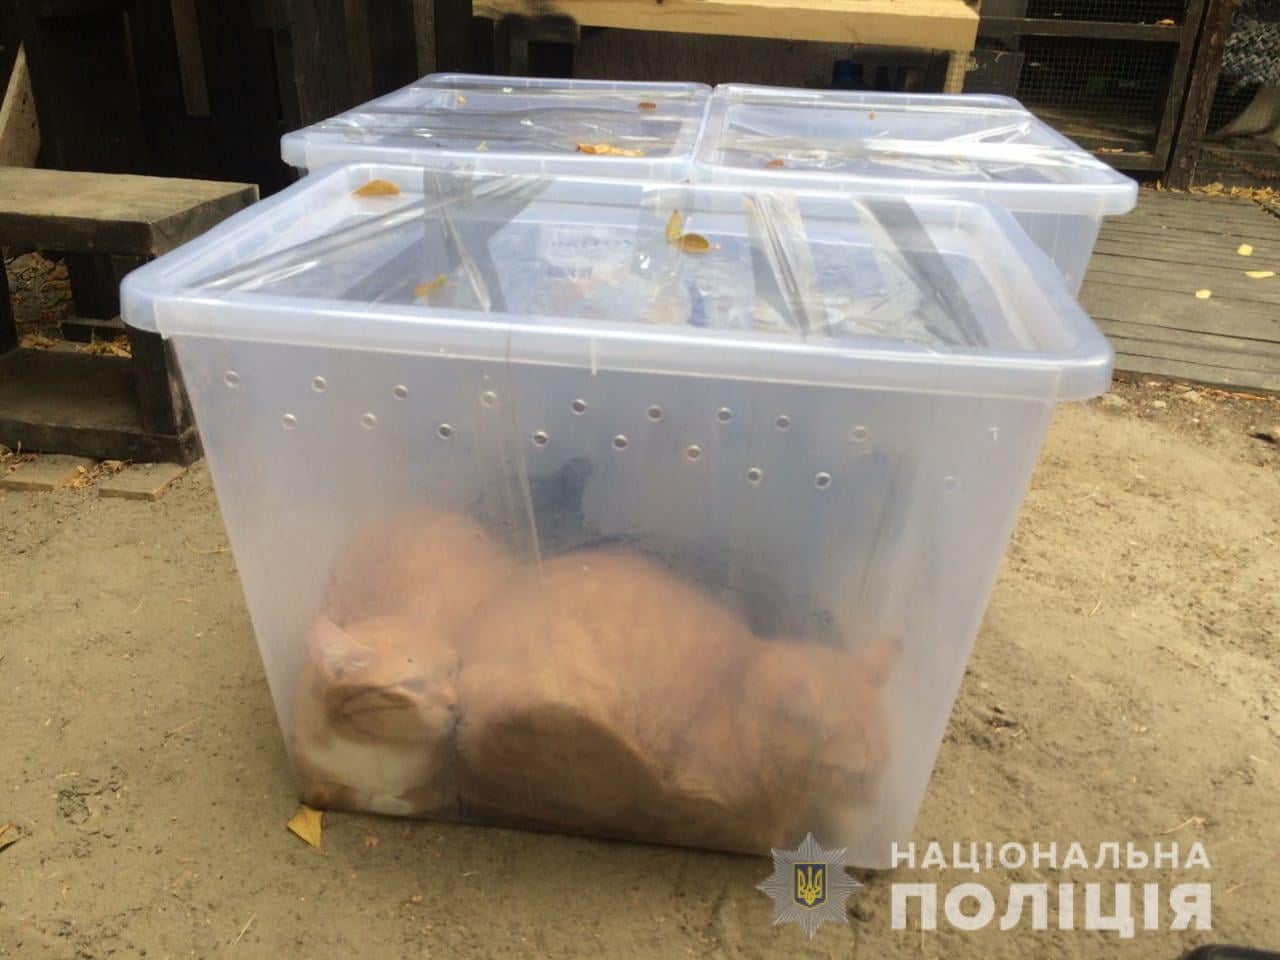 Фото котов, которые нашли в контейнере в Харькове. Нацполиция